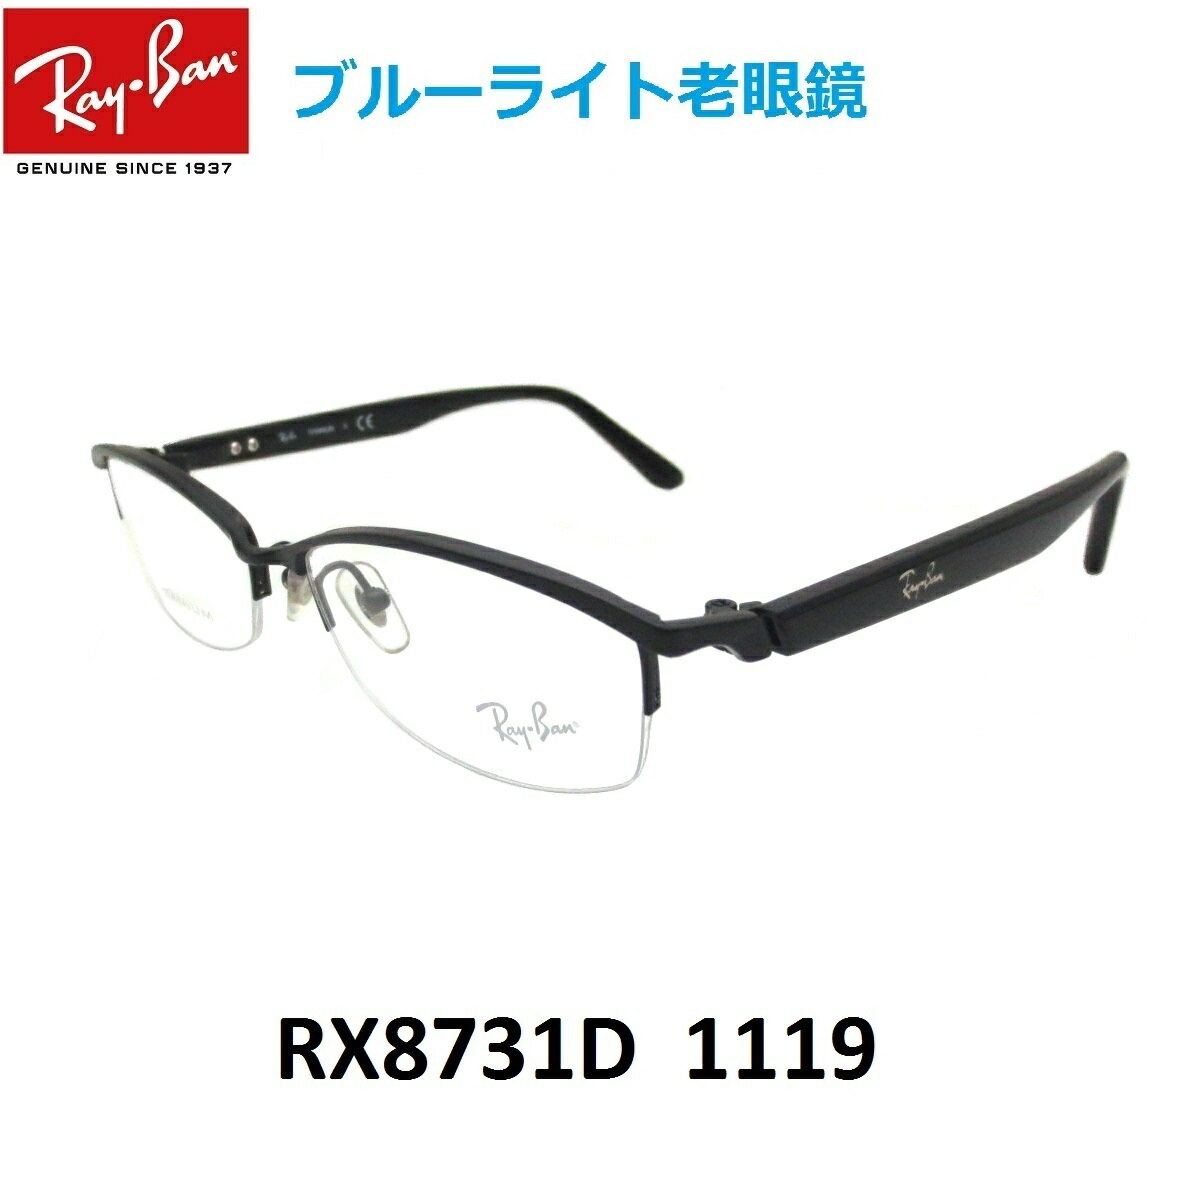 ブルーライトカット老眼鏡 メガネ 中間度数 かっこいいシニアグラス Ray-Ban RX8731D 1119 メンズ レディース 男女兼用 UVカット ブルーライトカットレンズPC スマホ 【正規メーカー保証書付】【あす楽対応】